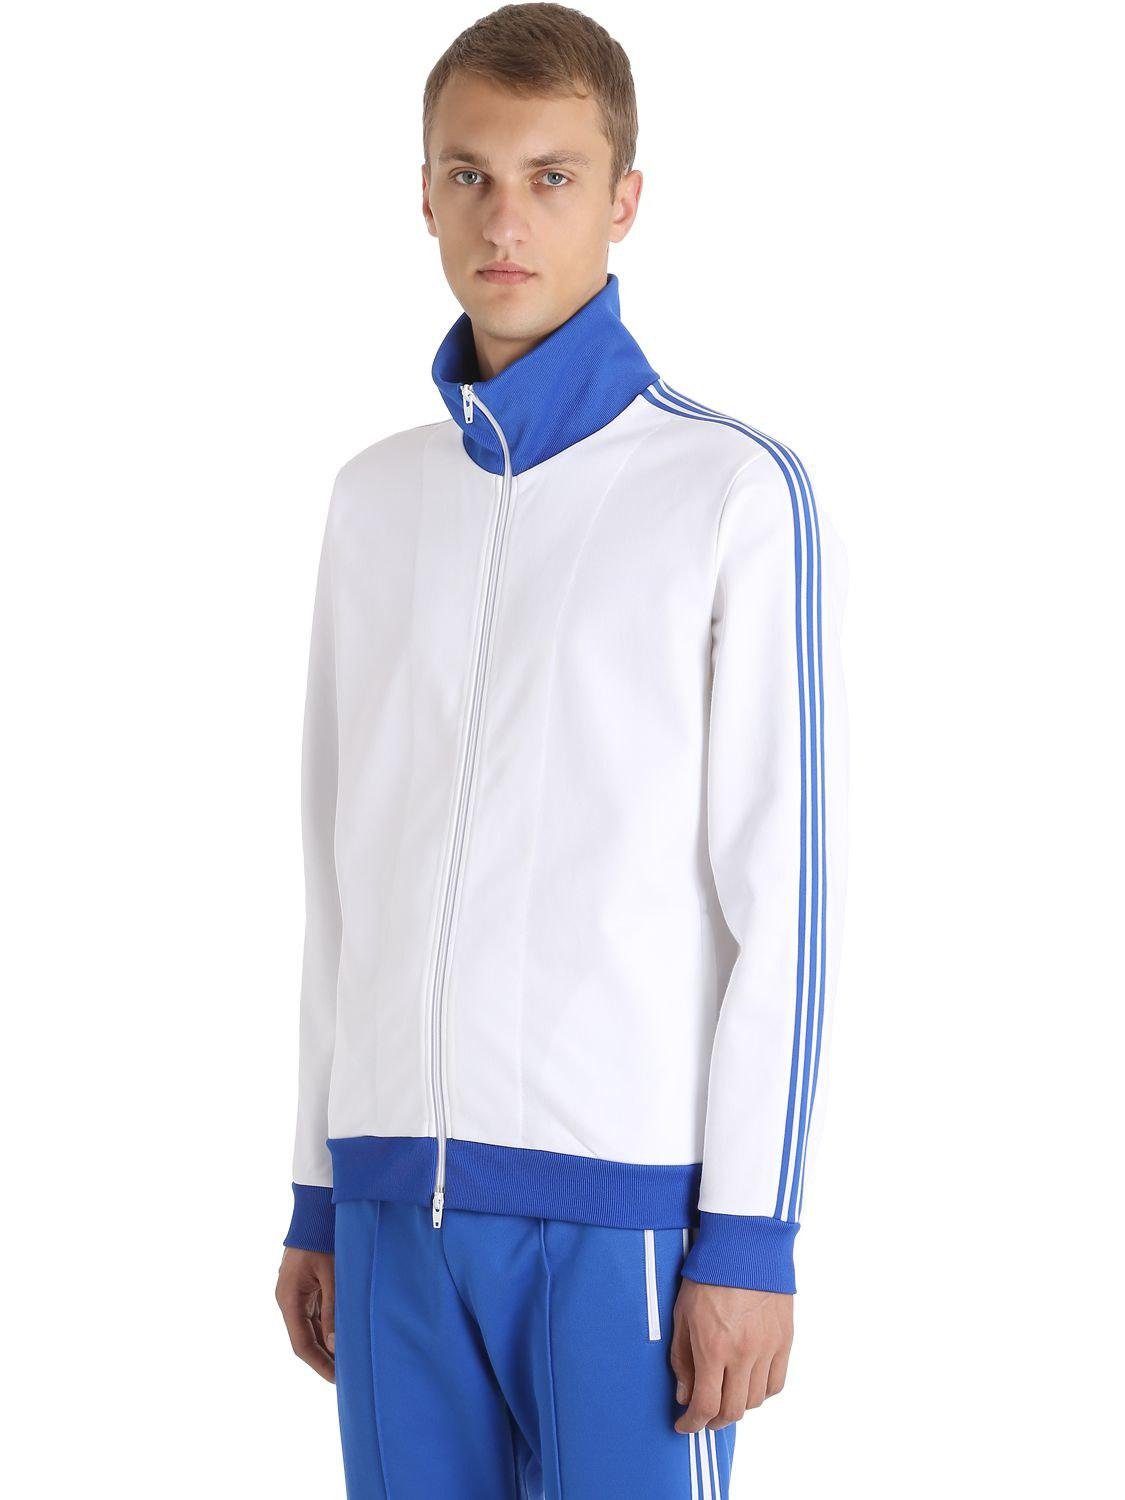 adidas Originals Franz Beckenbauer Tracksuit in White/Blue (Blue) for Men |  Lyst Australia